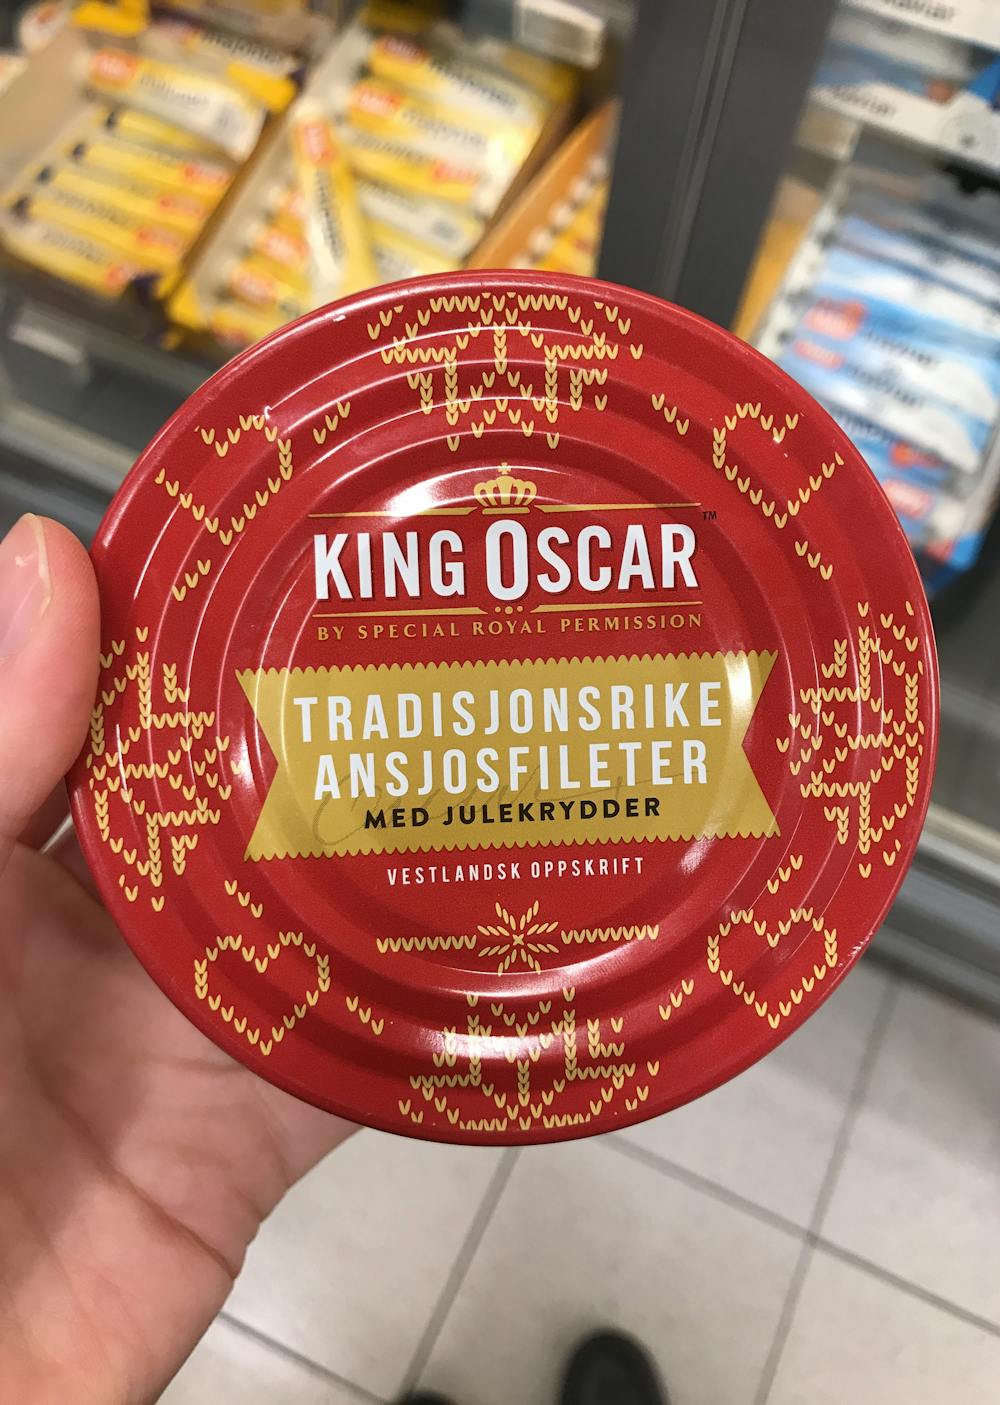 Tradisjonsrike ansjosfileter med julekrydder, King Oscar